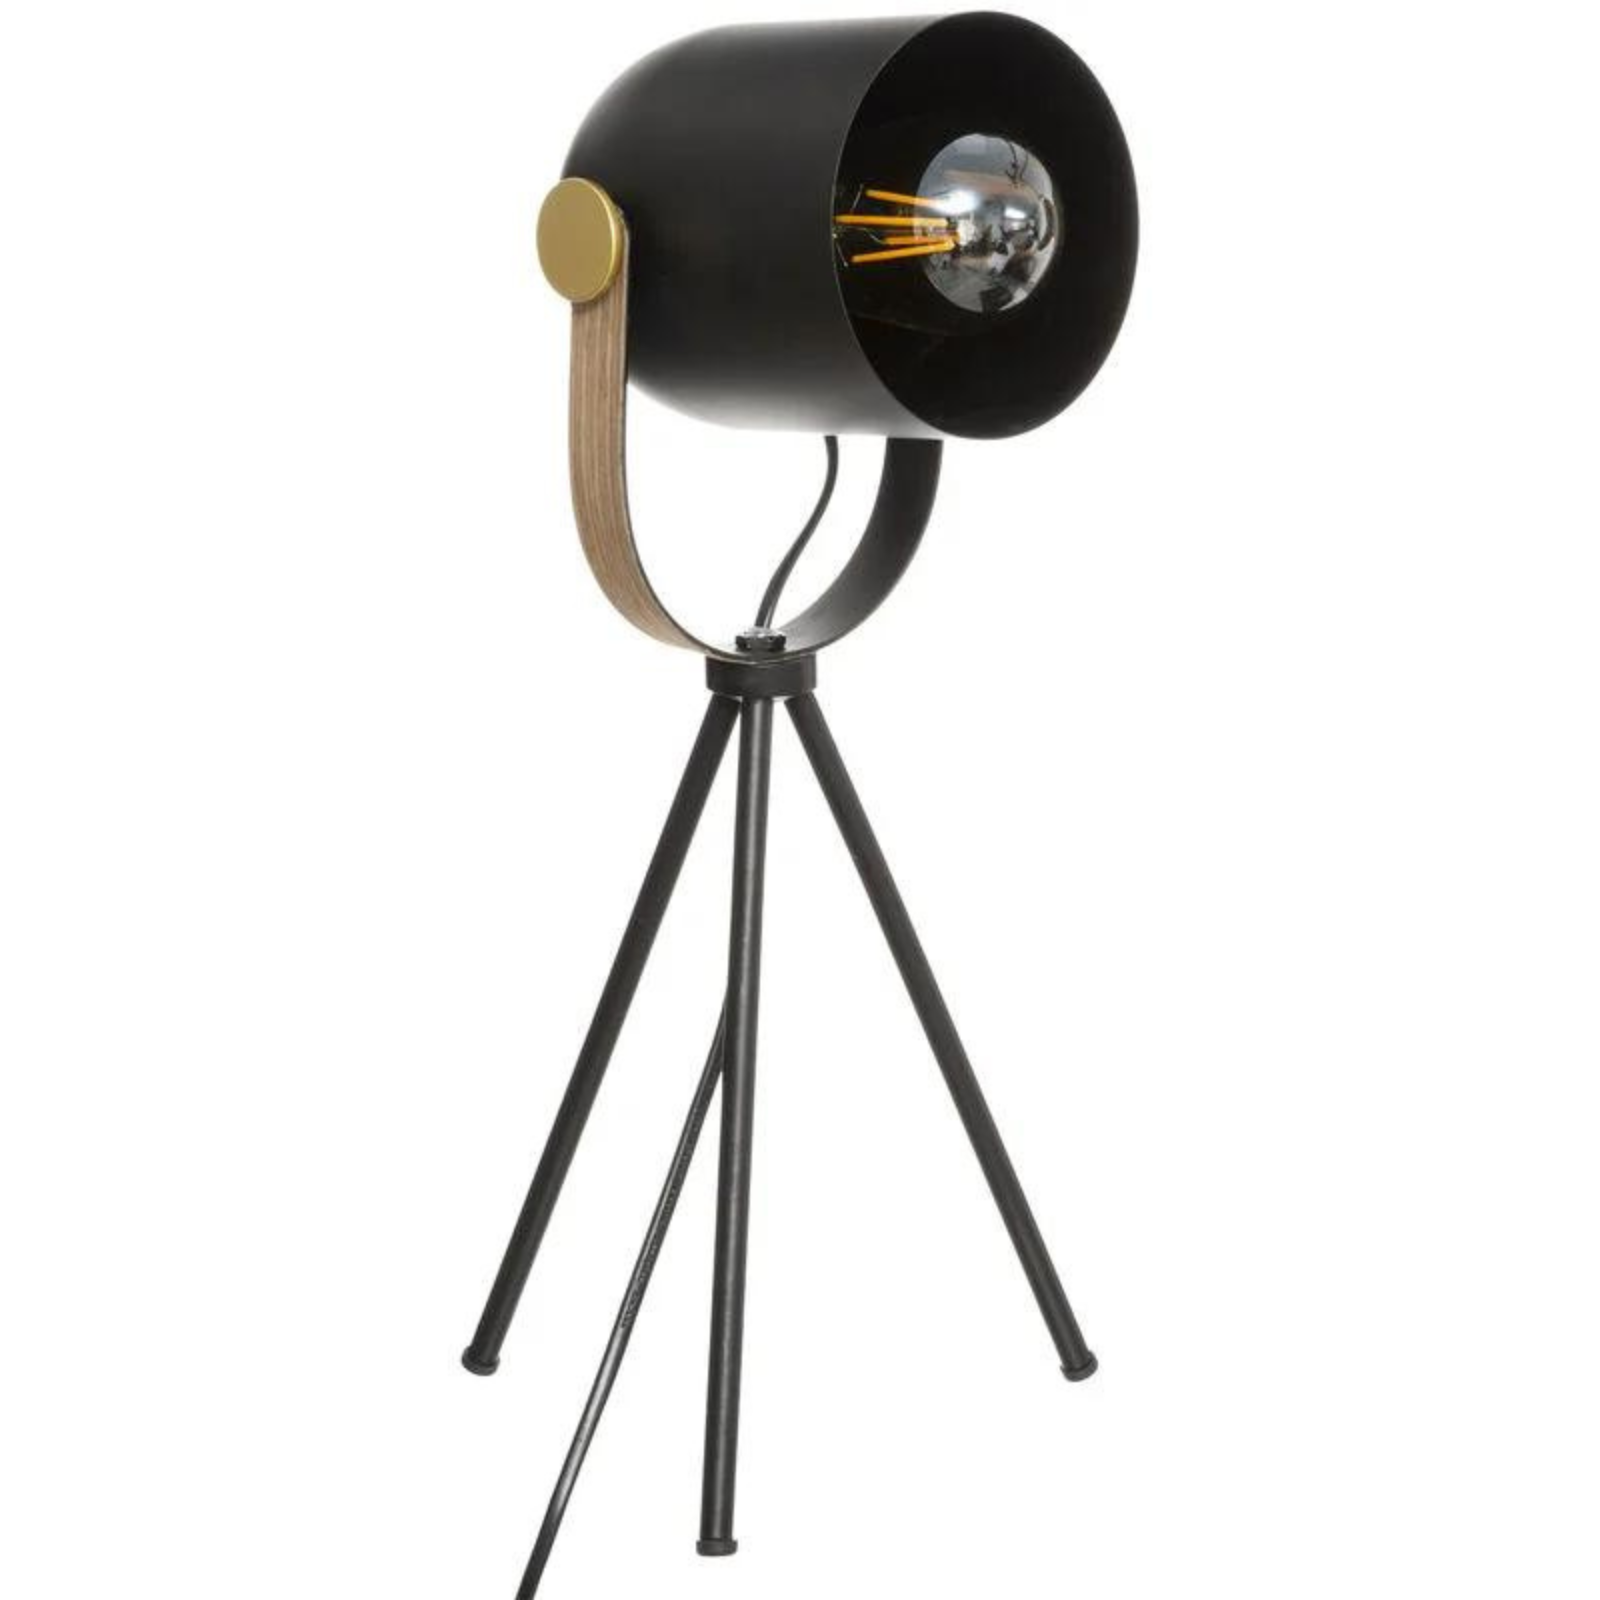 Lampada proiettore su treppiedi in metallo nero con finiture oro - Industrial